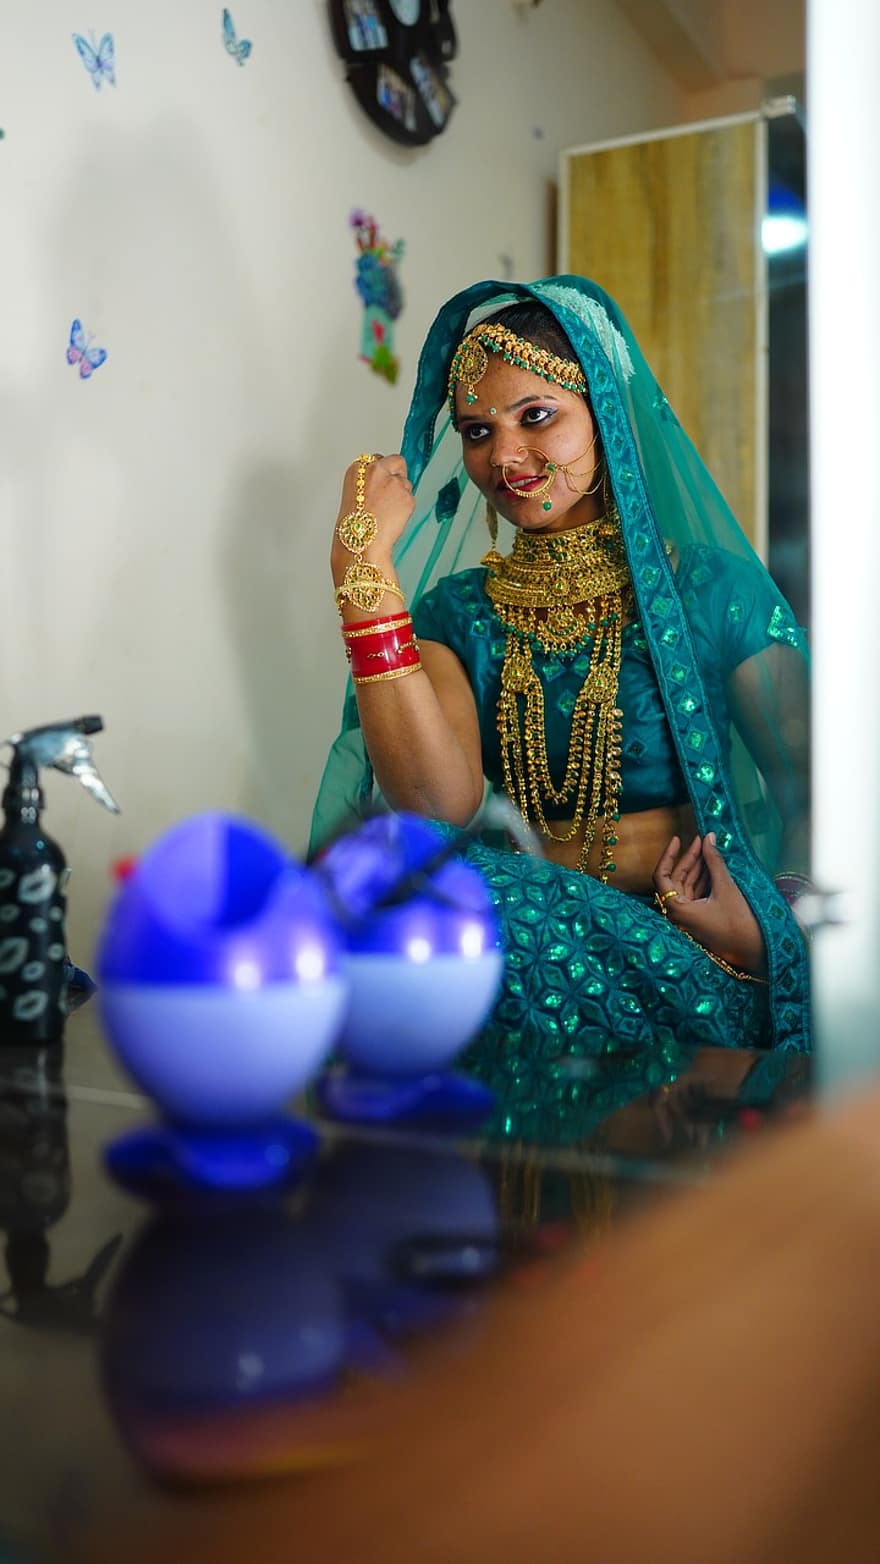 sonam prajapati, μοντέλο, ηθοποιός, Ινδός, κορίτσι, θηλυκός, νυφη